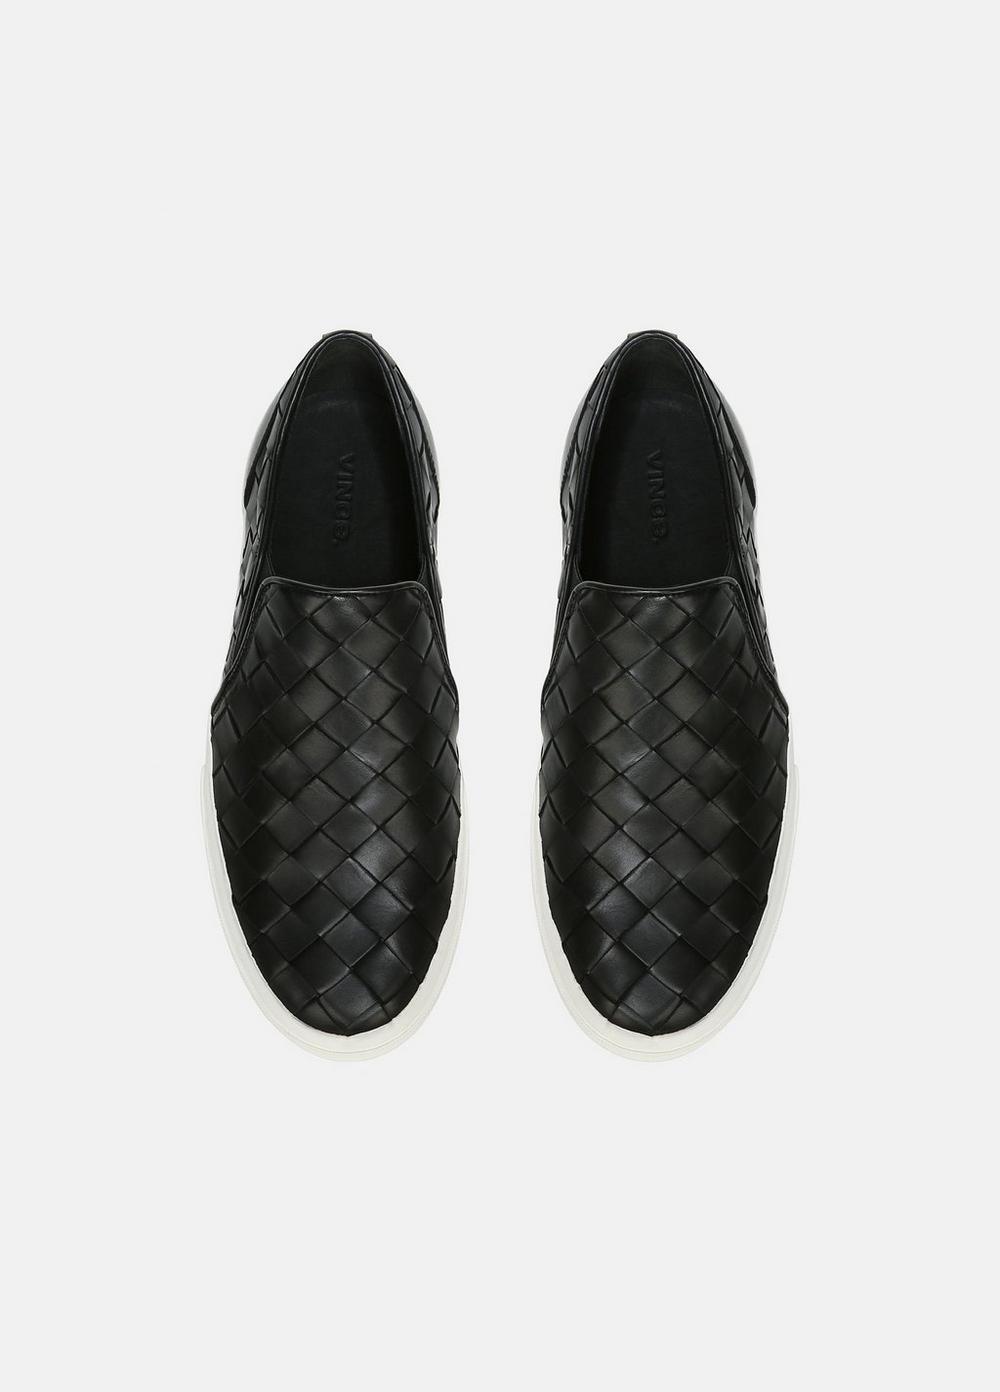 Woven Leather Fletcher Sneaker